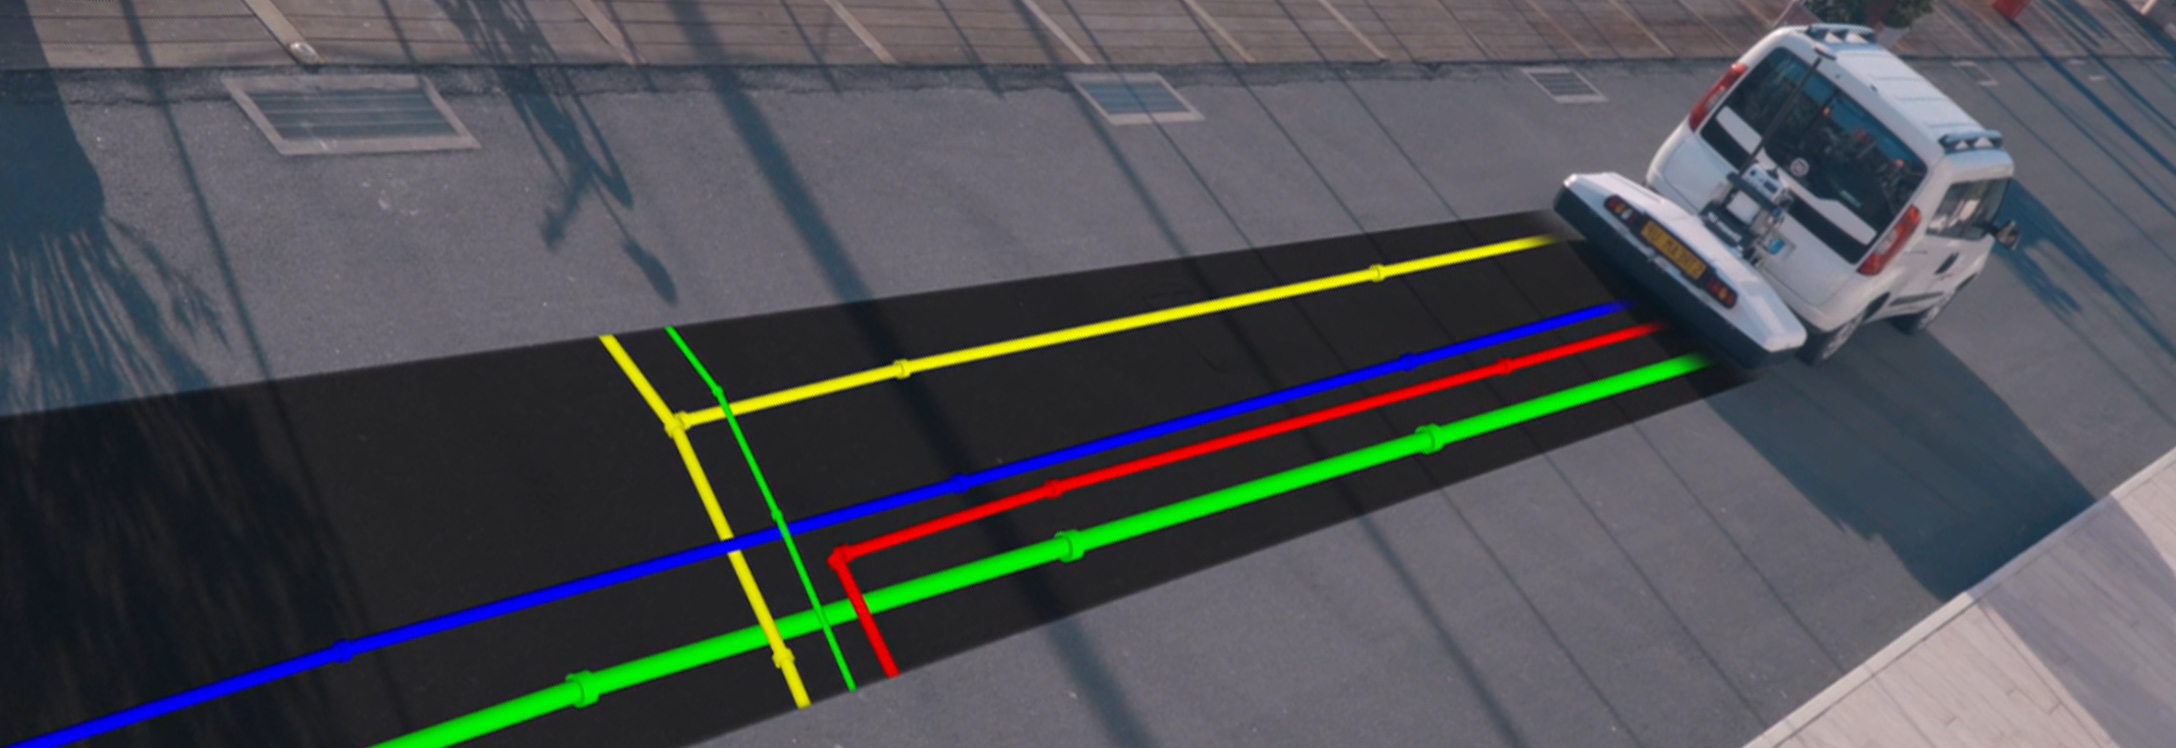 Tubos coloridos renderizados graficamente expostos à medida que uma van passa utilizando um produto de radar com penetração no solo fixado a ela